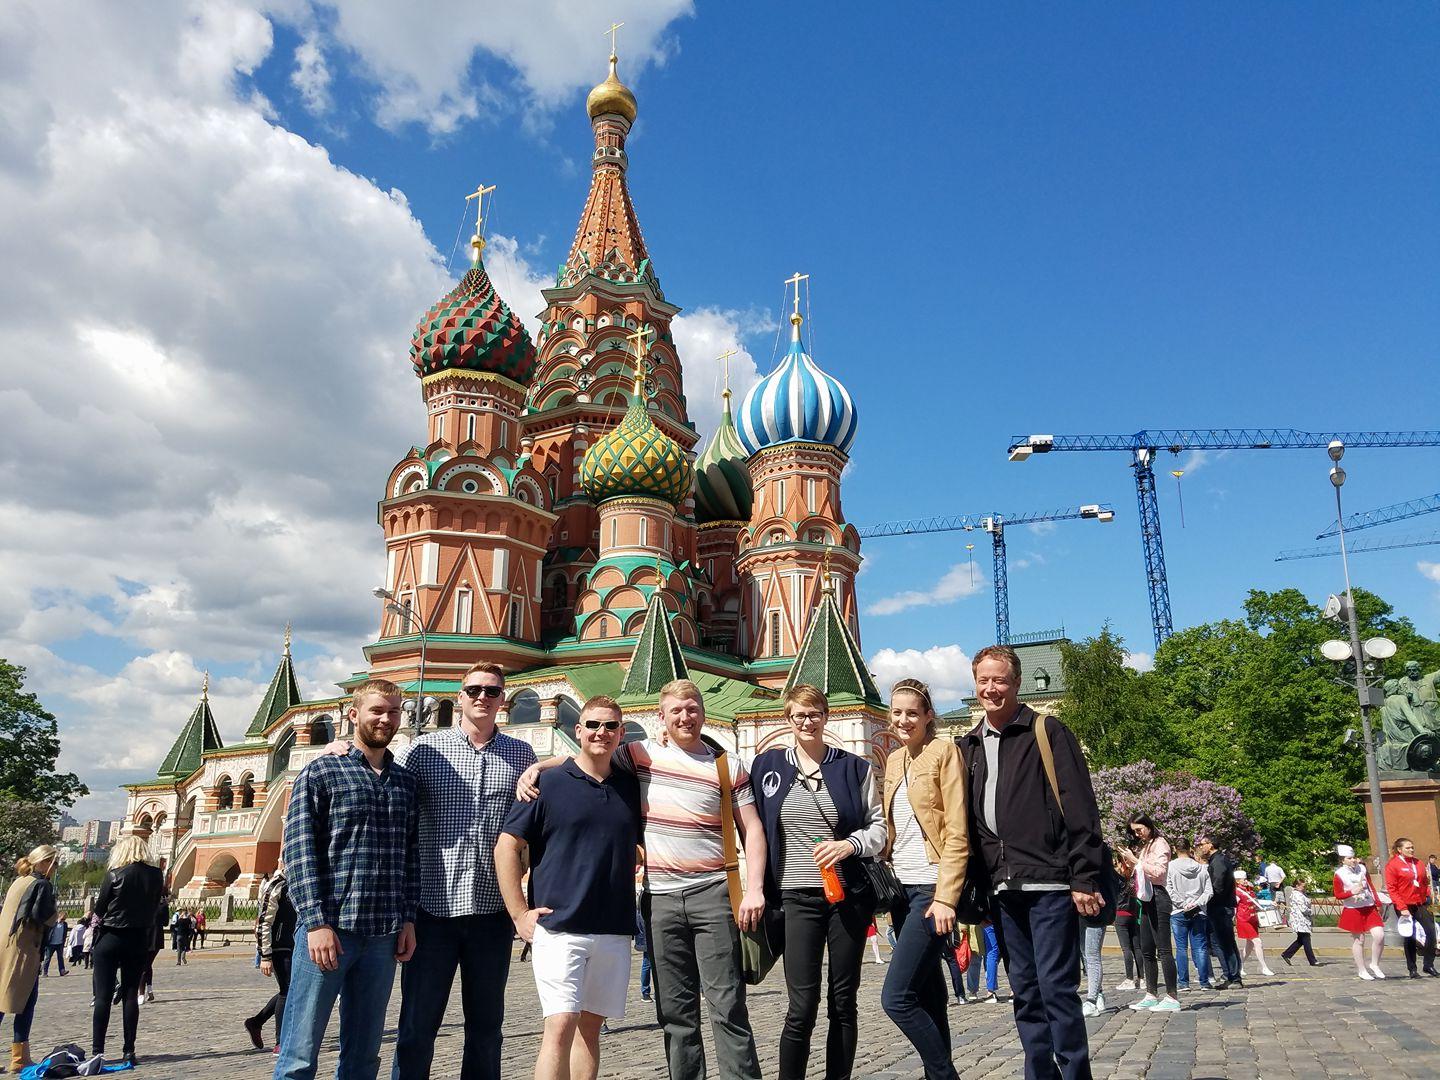 BGSU俄语专业的学生有机会到莫斯科和圣彼得堡留学. 彼得堡.